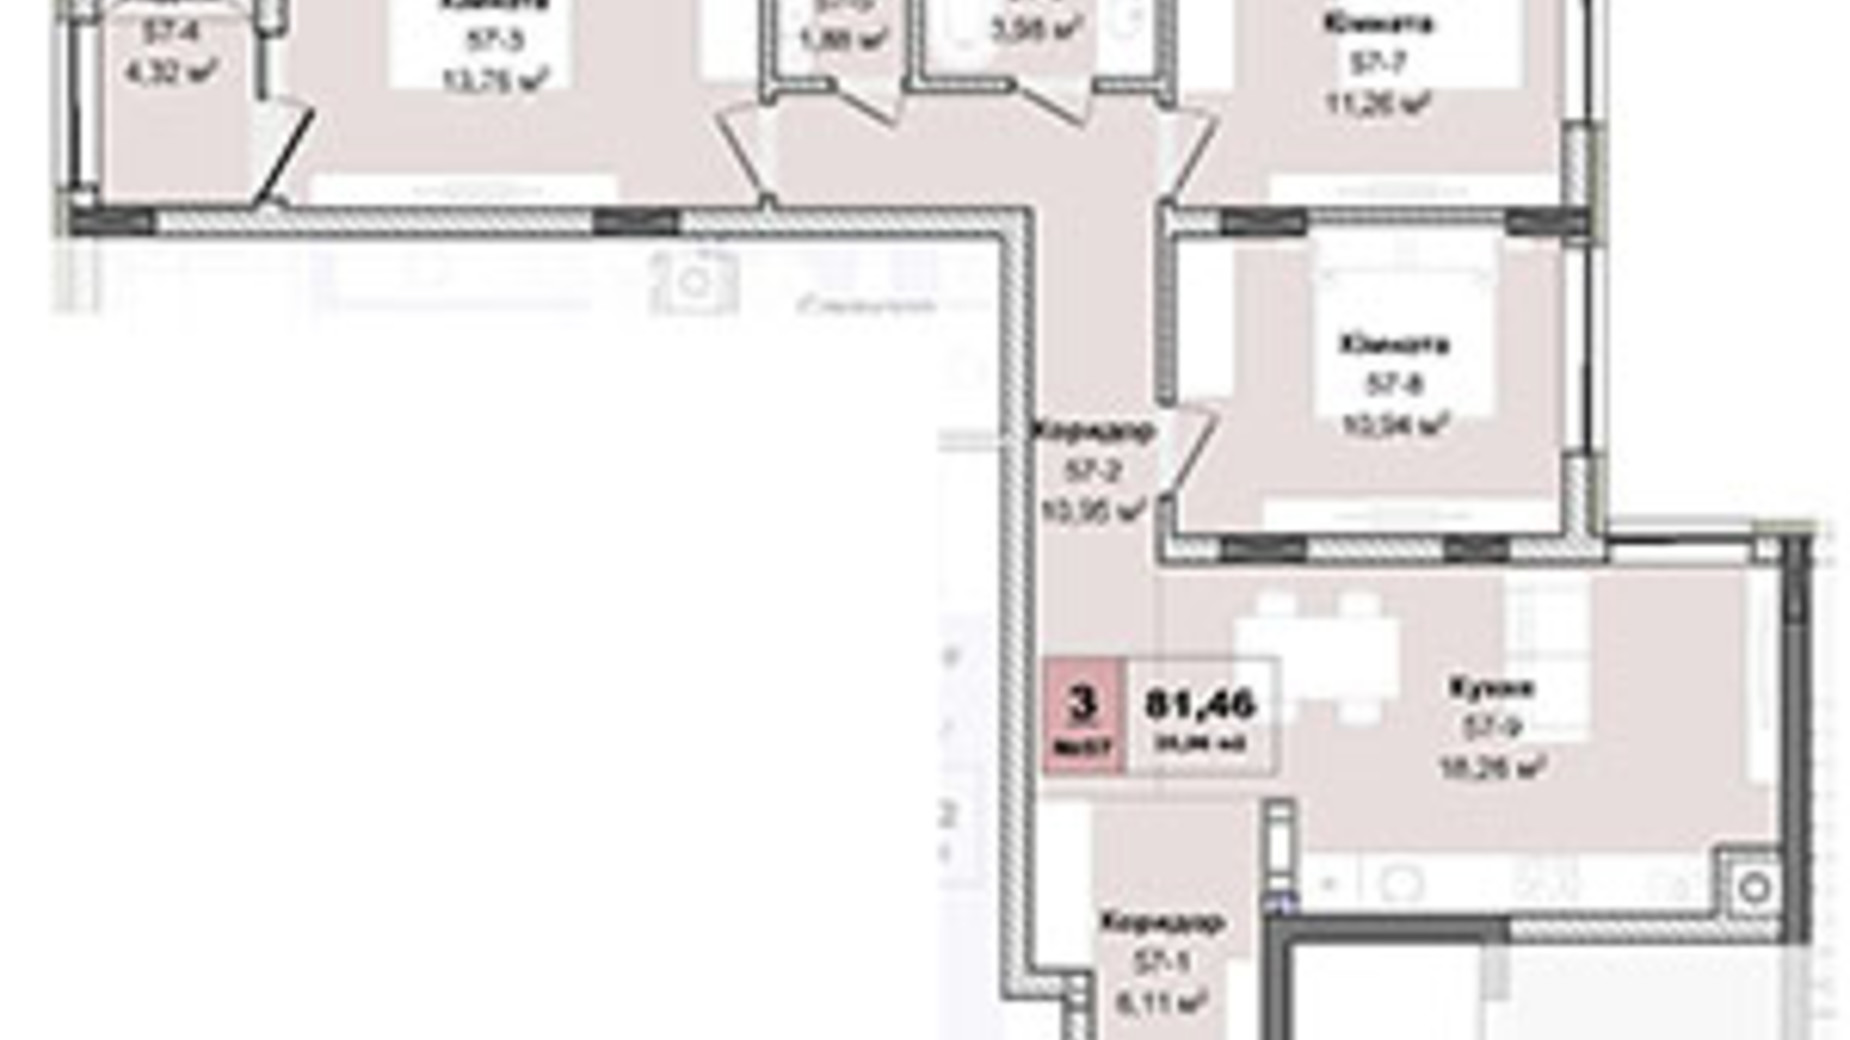 Планування 3-кімнатної квартири в ЖК Panorama 81.46 м², фото 605147